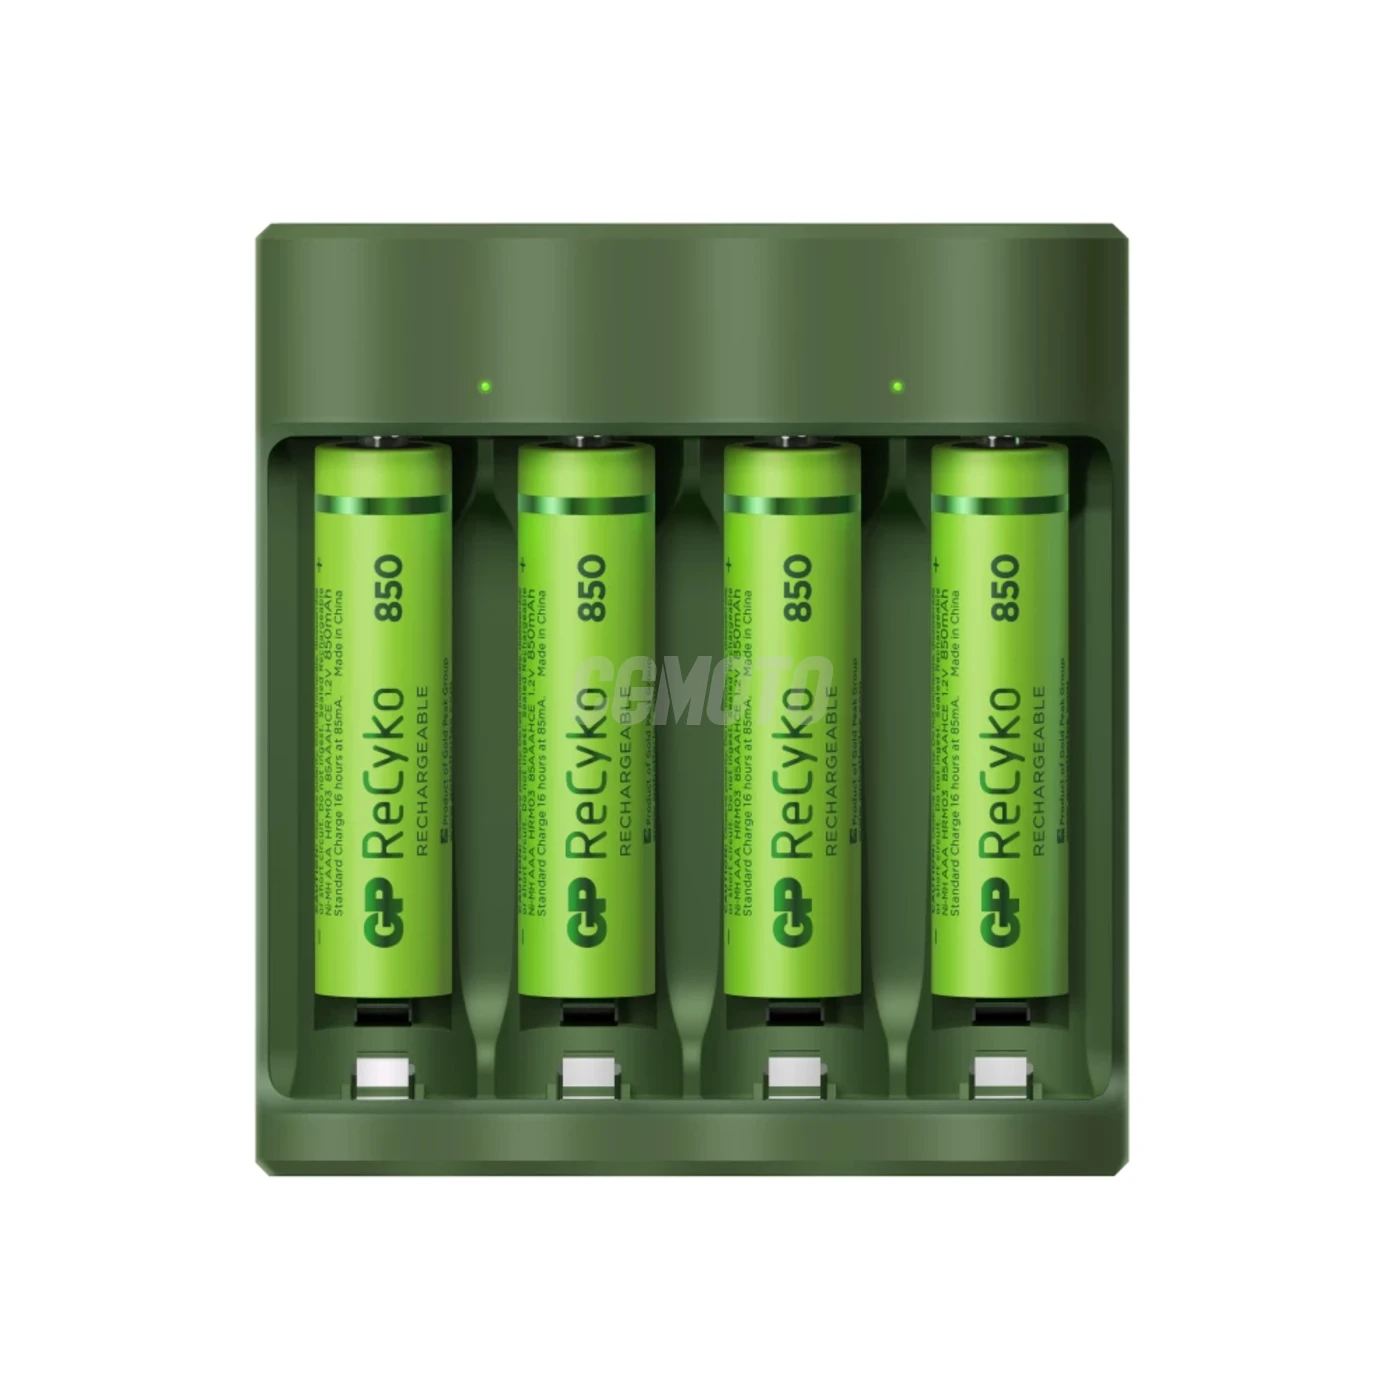 Caricatore 6 ore GP B421 (USB) + 4 batterie AAA 850mAh